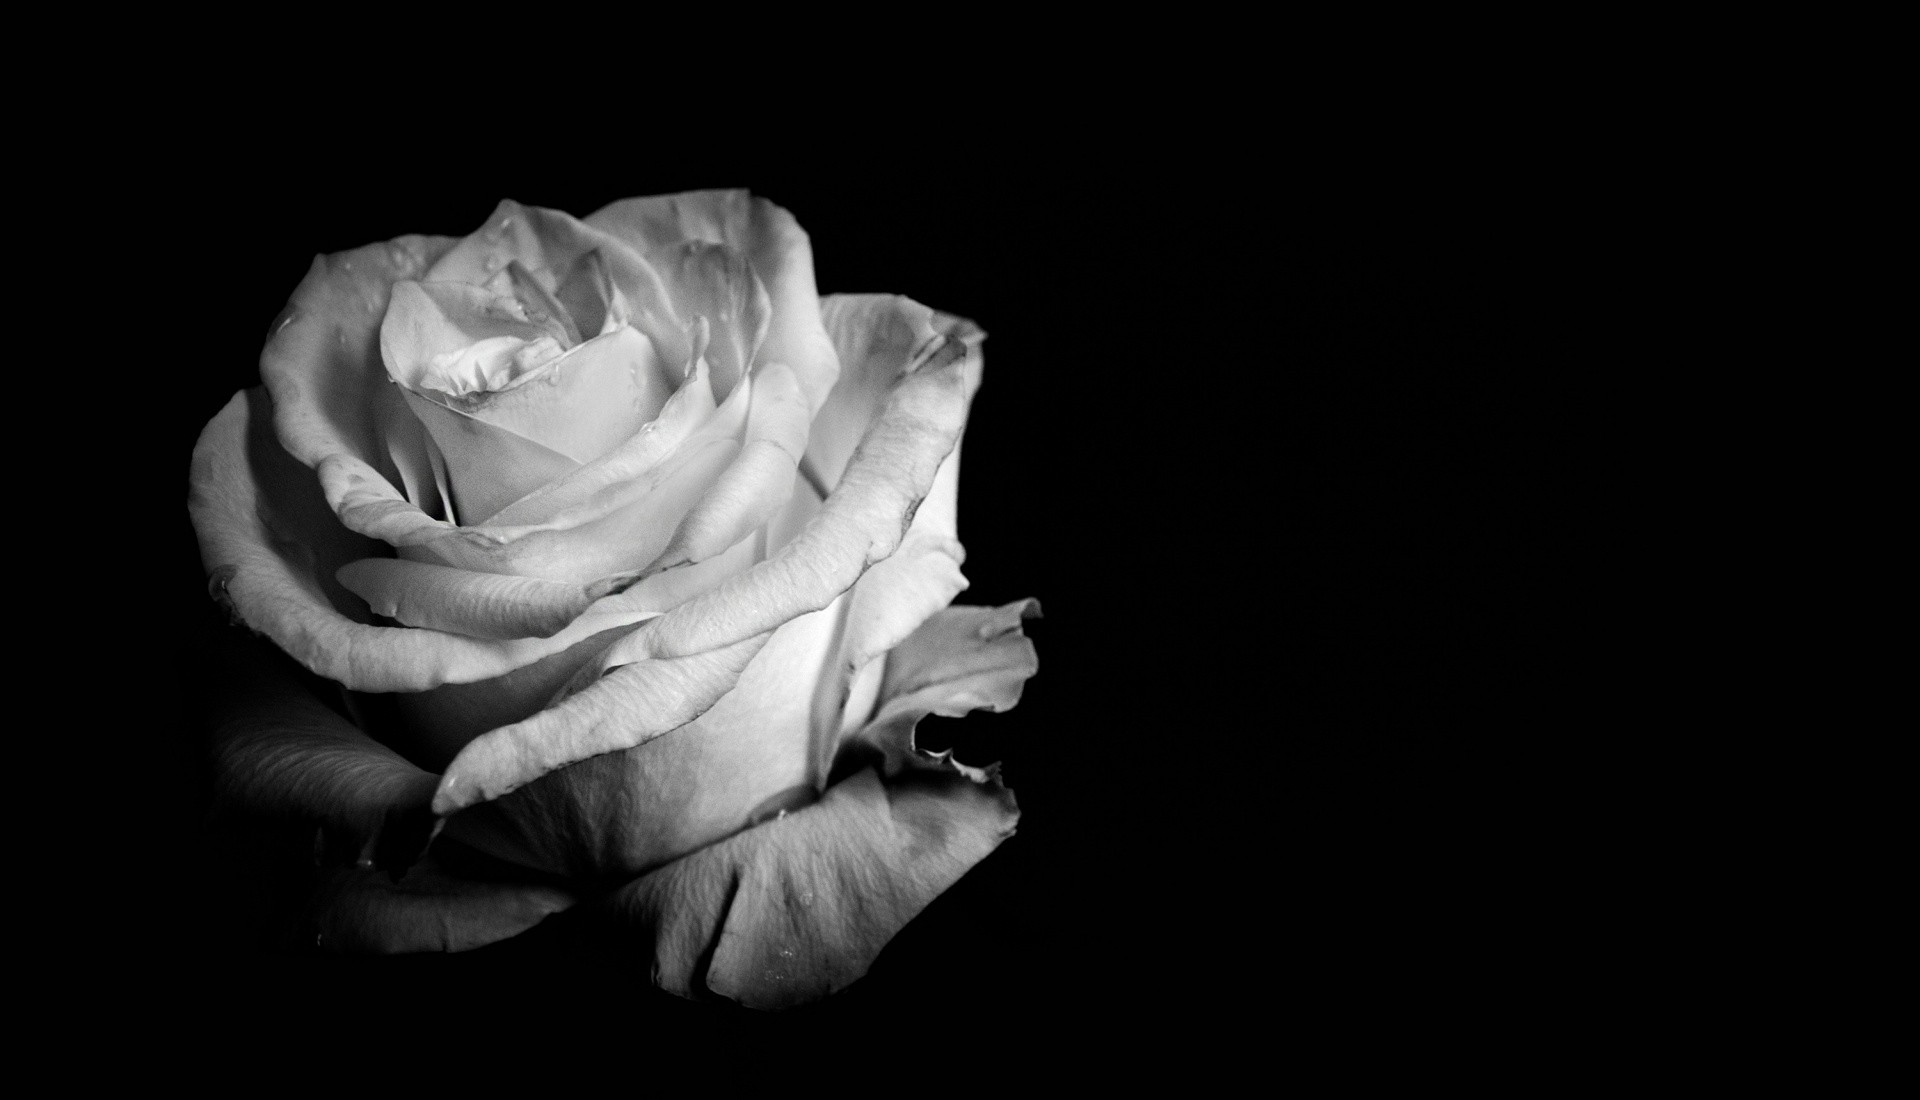 图片素材 : 黑与白, 厂, 花瓣, 盛开, 特写, 宏观摄影, 黑色背景, 开花植物, 花园玫瑰, 玫瑰家庭, 蓝白色, 静物摄影, 植物茎 ...